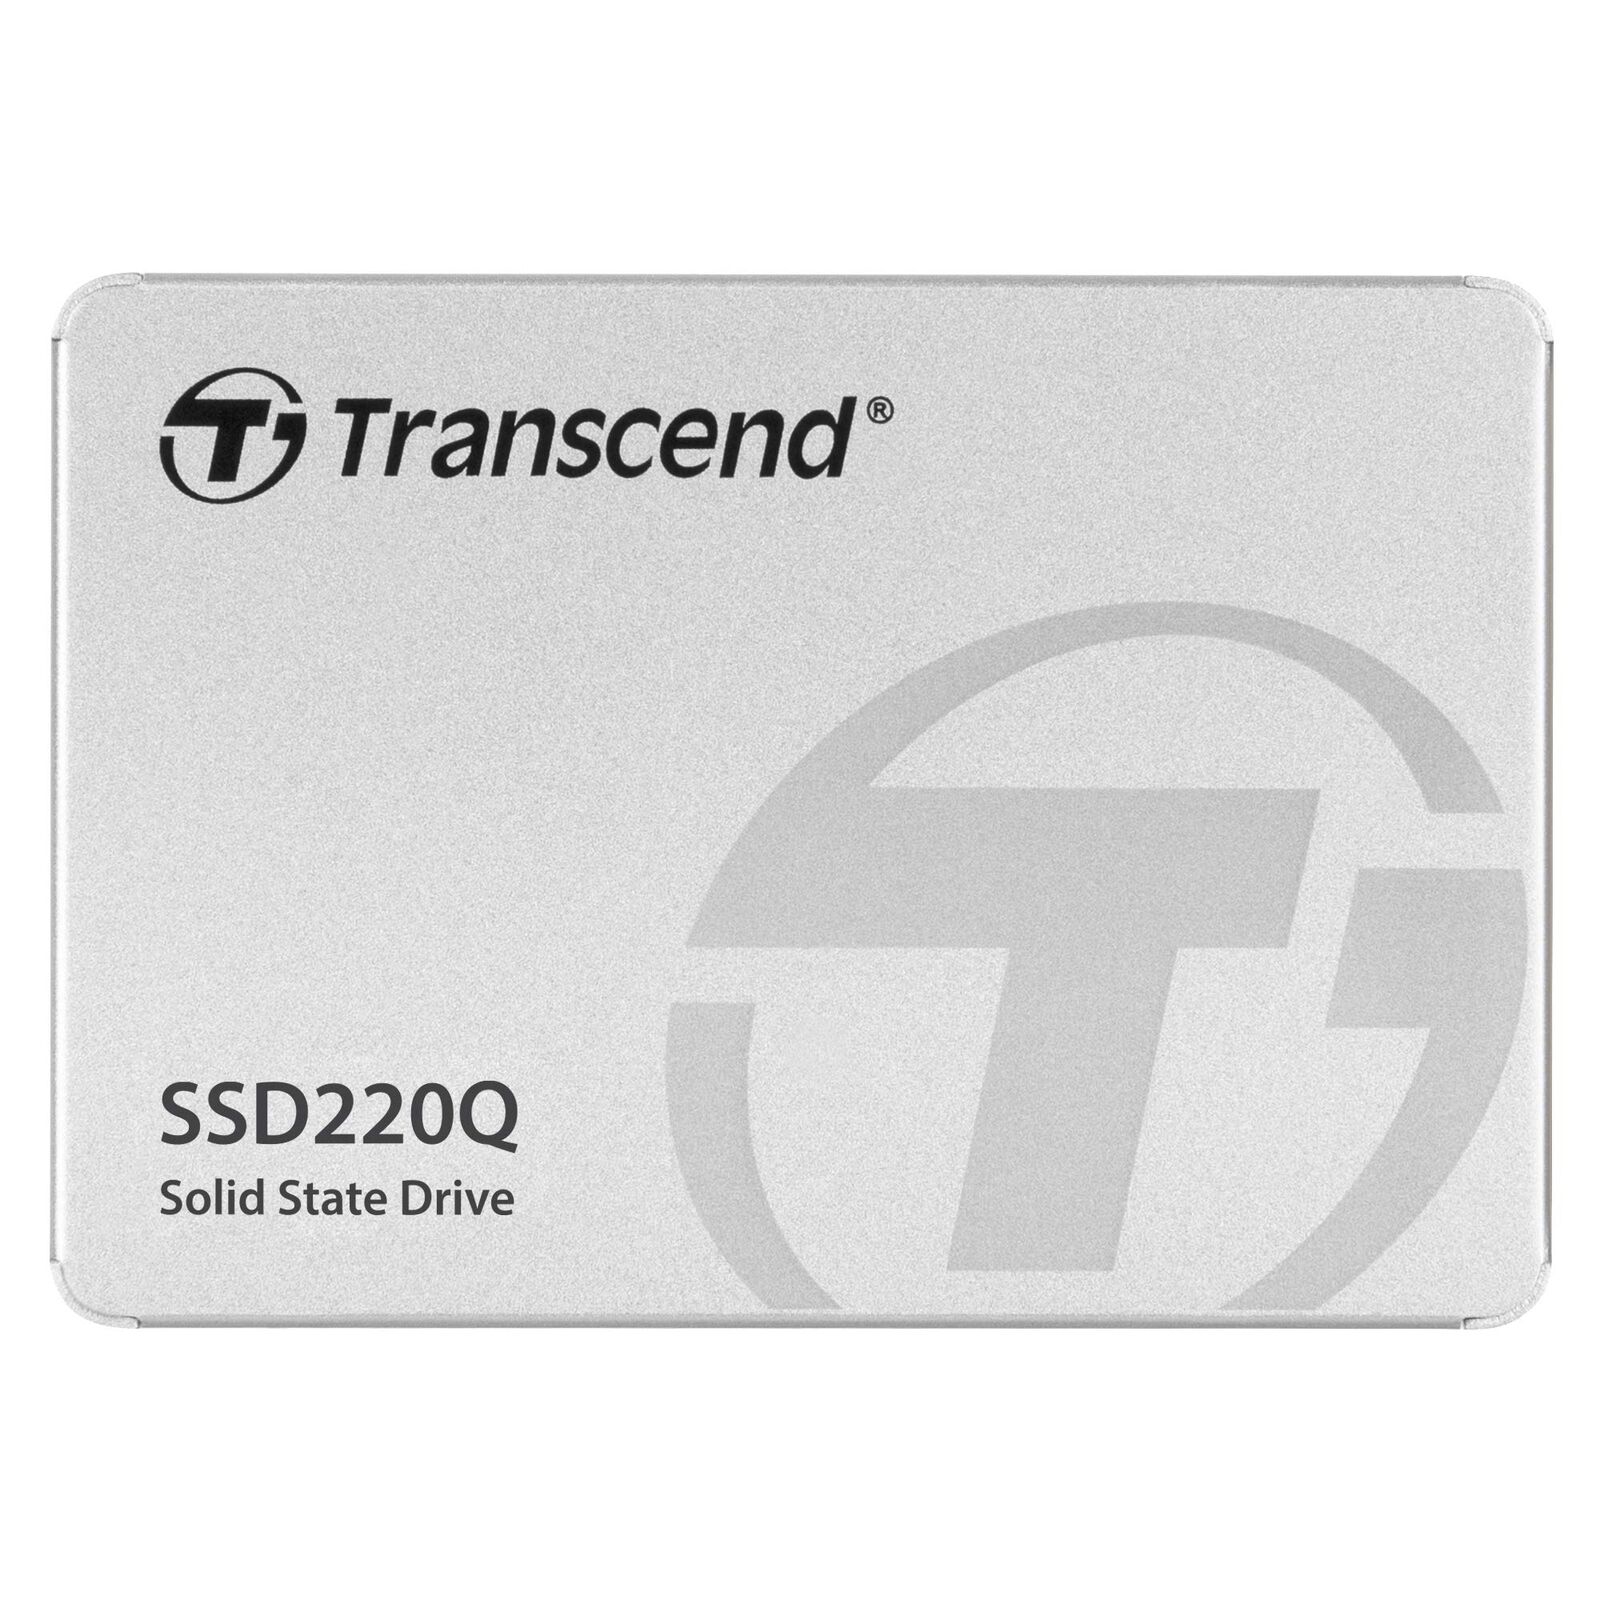 Transcend 1TB SATA III 6Gb/s interne 2.5 Zoll SSD220Q 2.5 Zoll TS1TSSD220Q, Fest